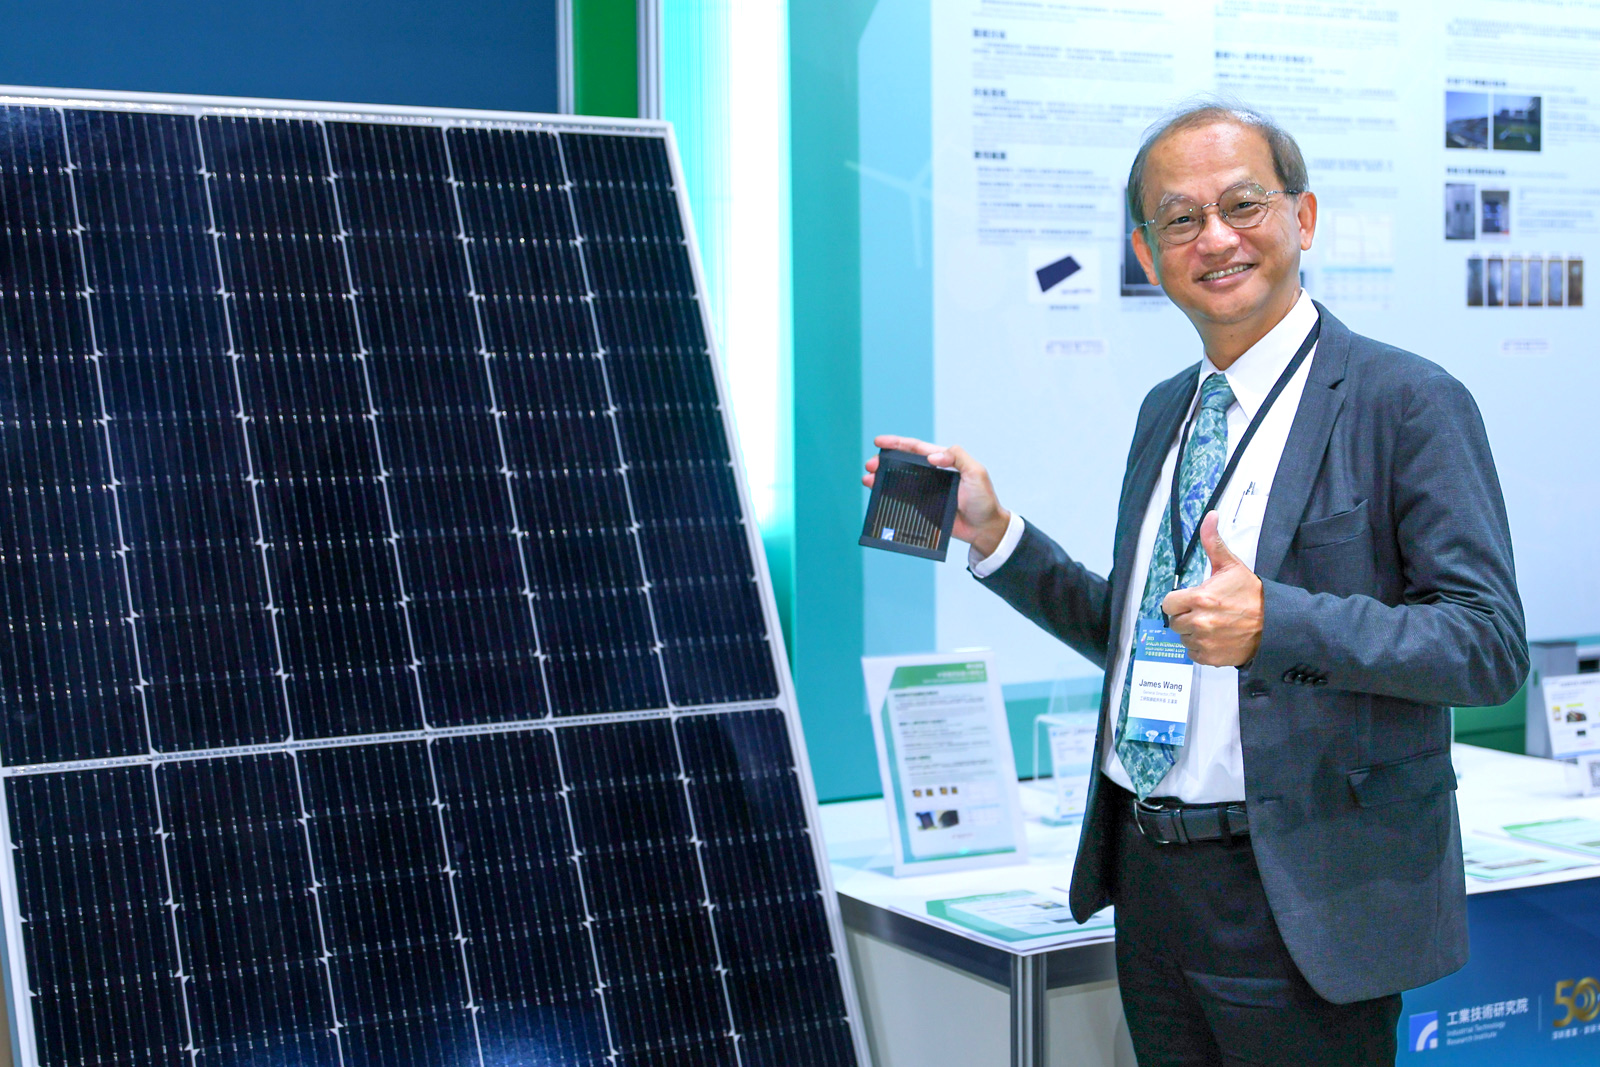 工研院綠能所所長王漢英解說本次論壇展出的高效率矽晶太陽電池技術。